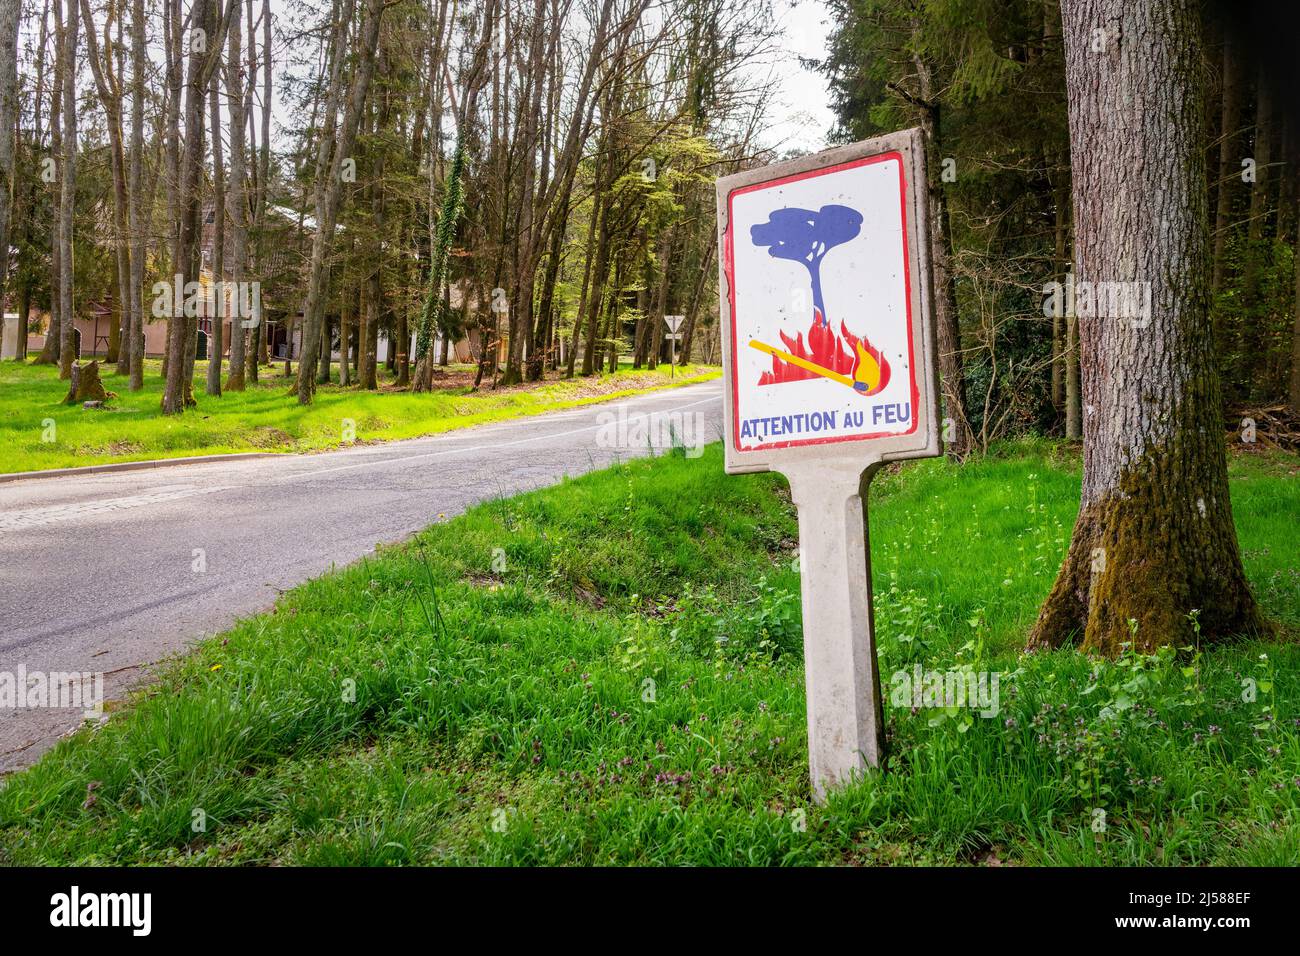 Attenzione au feu (attenzione pericolo di incendio), vecchio cartello stradale francese d'epoca in legno Foto Stock